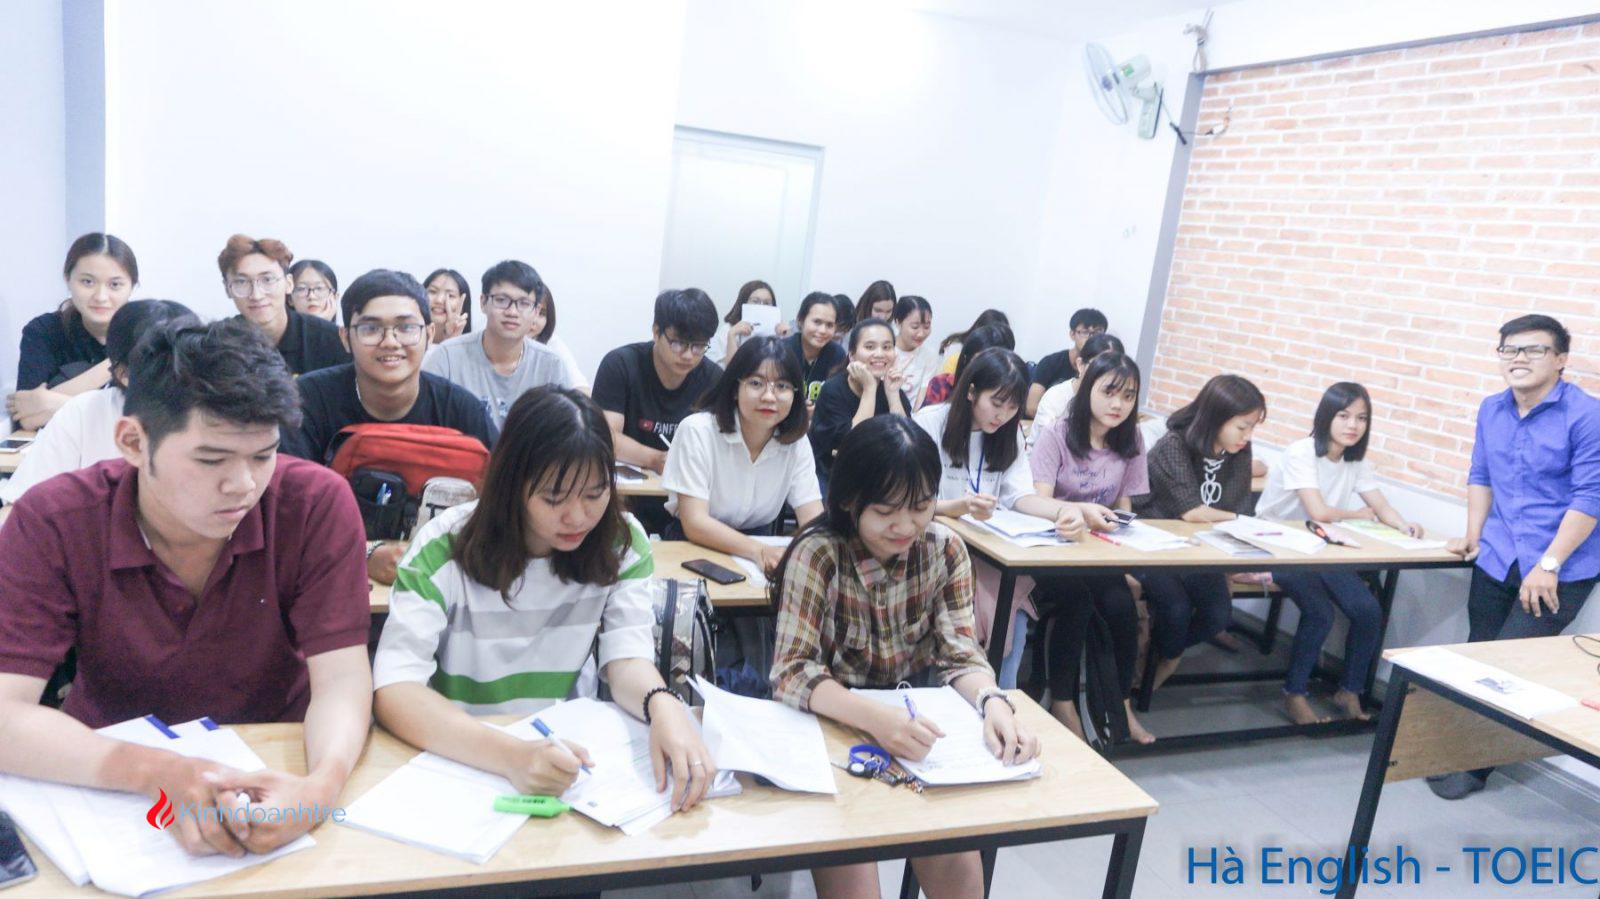 Nơi đây chính là sự lựa chọn của rất nhiều bạn sinh viên tại thành phố Hồ Chí Minh